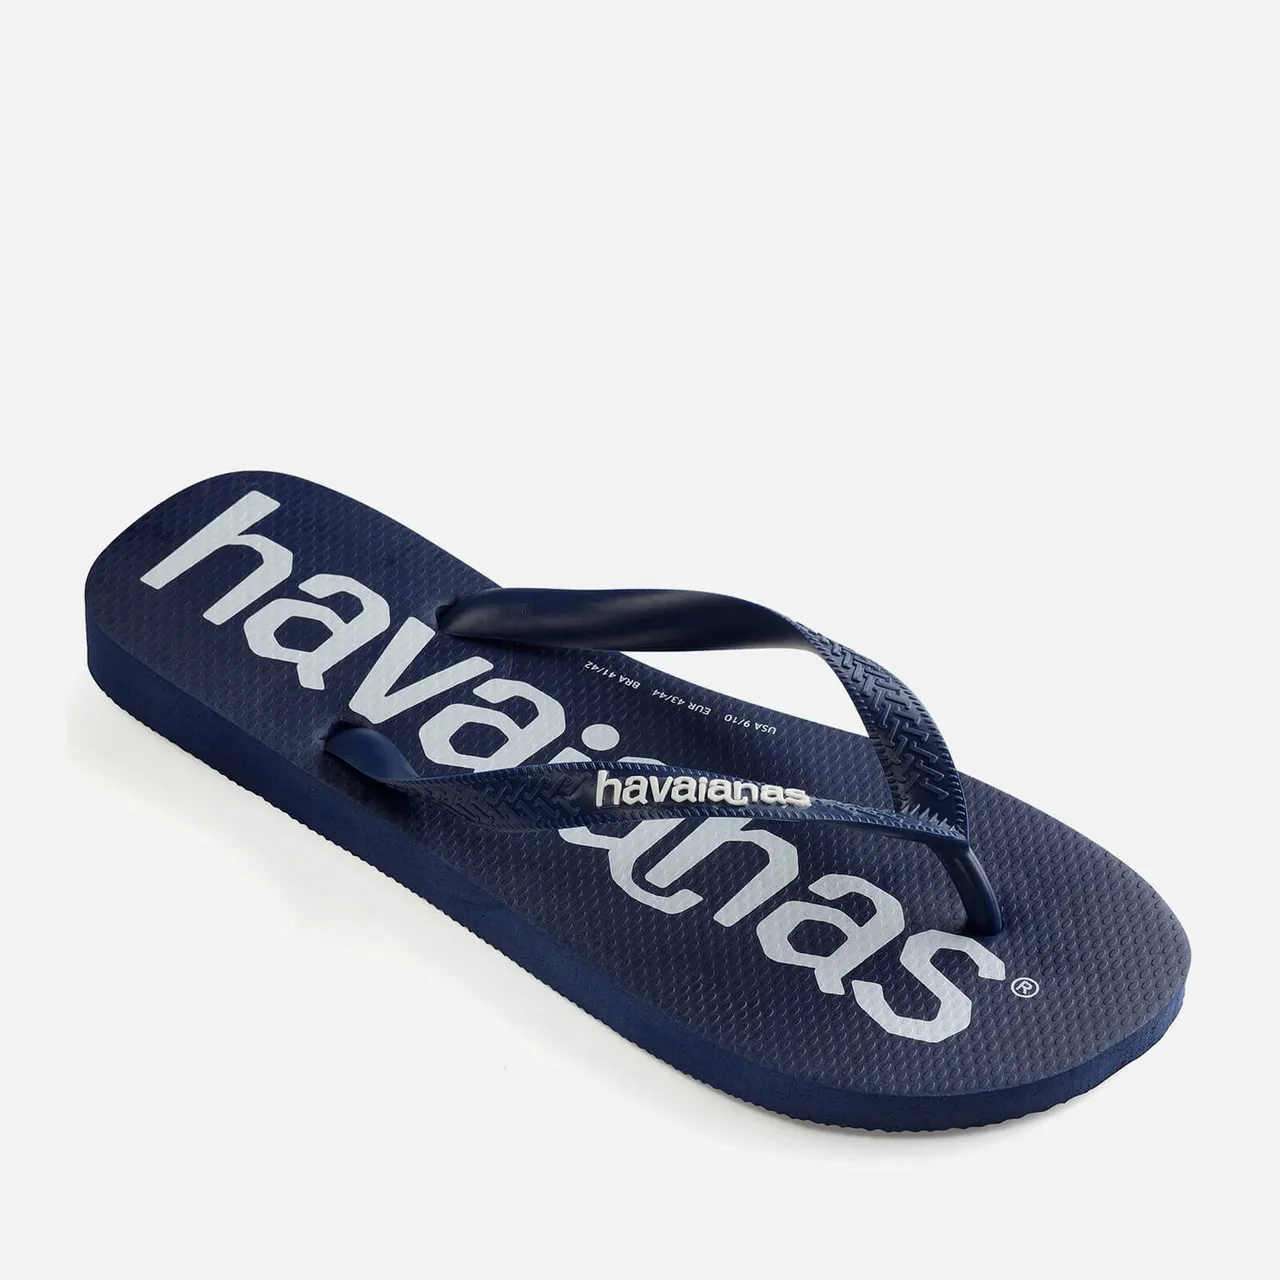 Havaianas Men's Top Logomania Flip Flops - Navy Blue - EU 41-42/UK 8